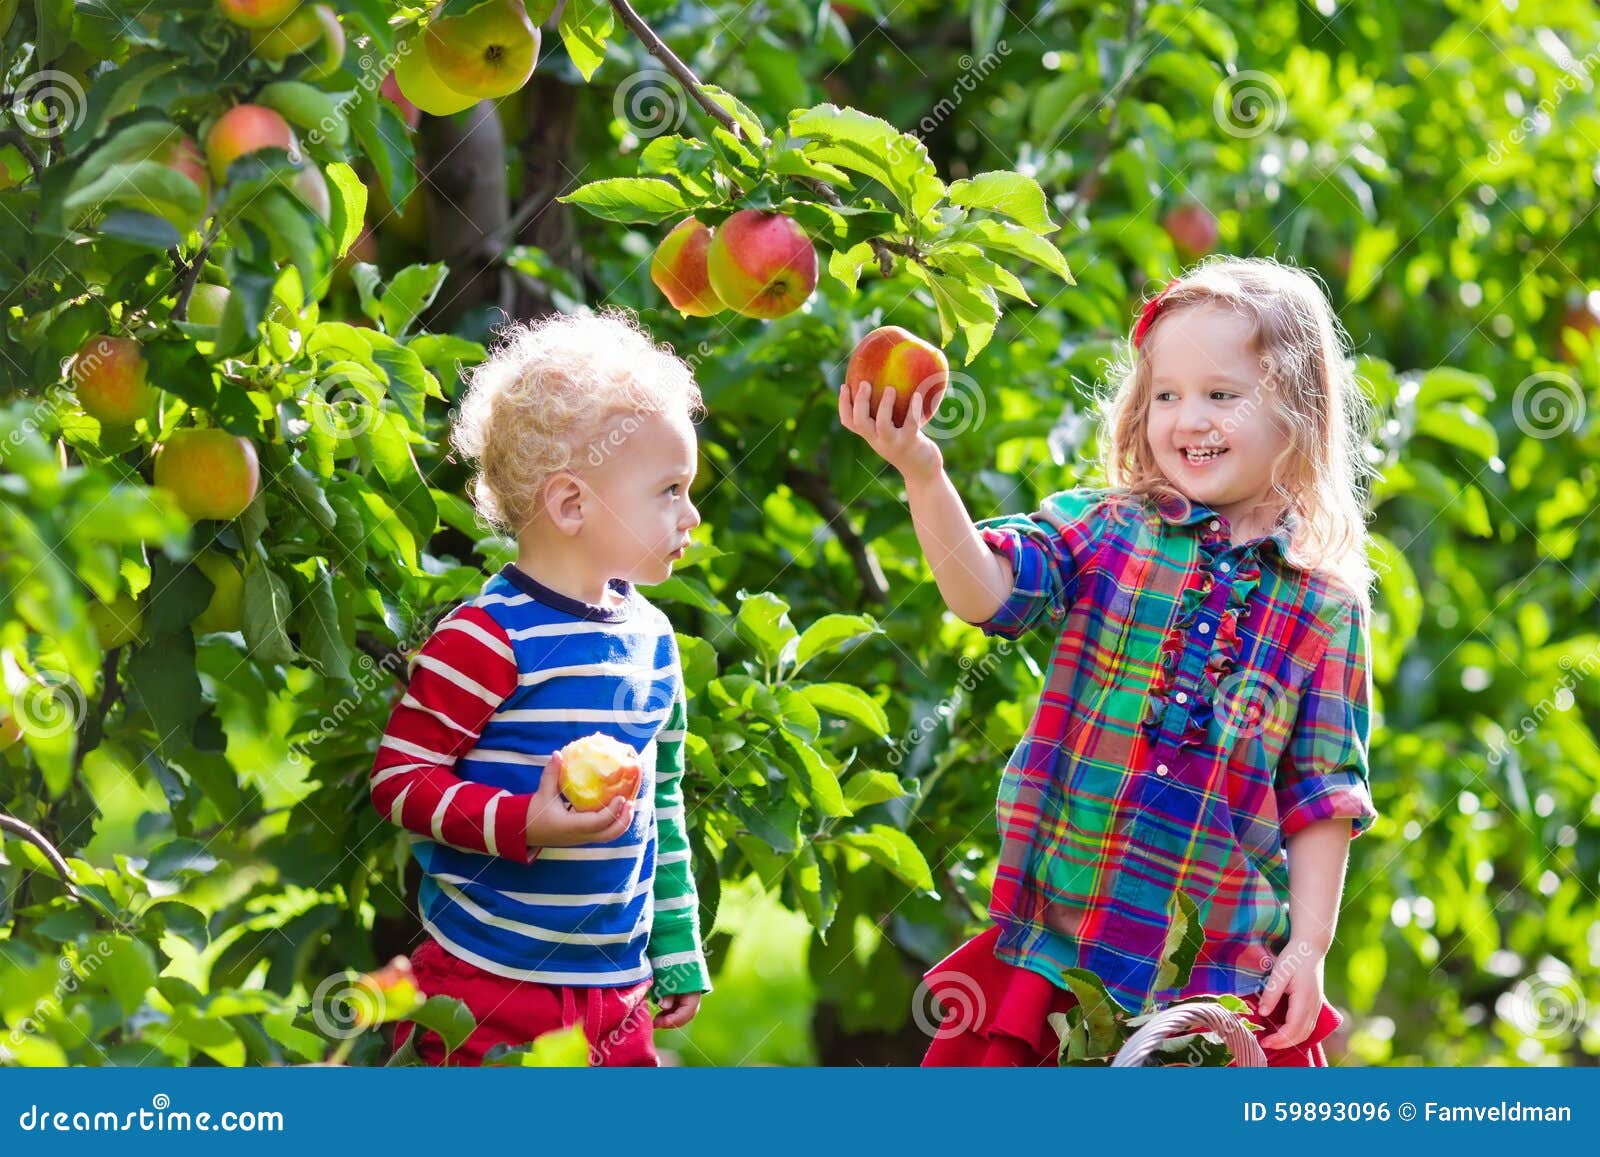 Ребенку можно свежее яблоко